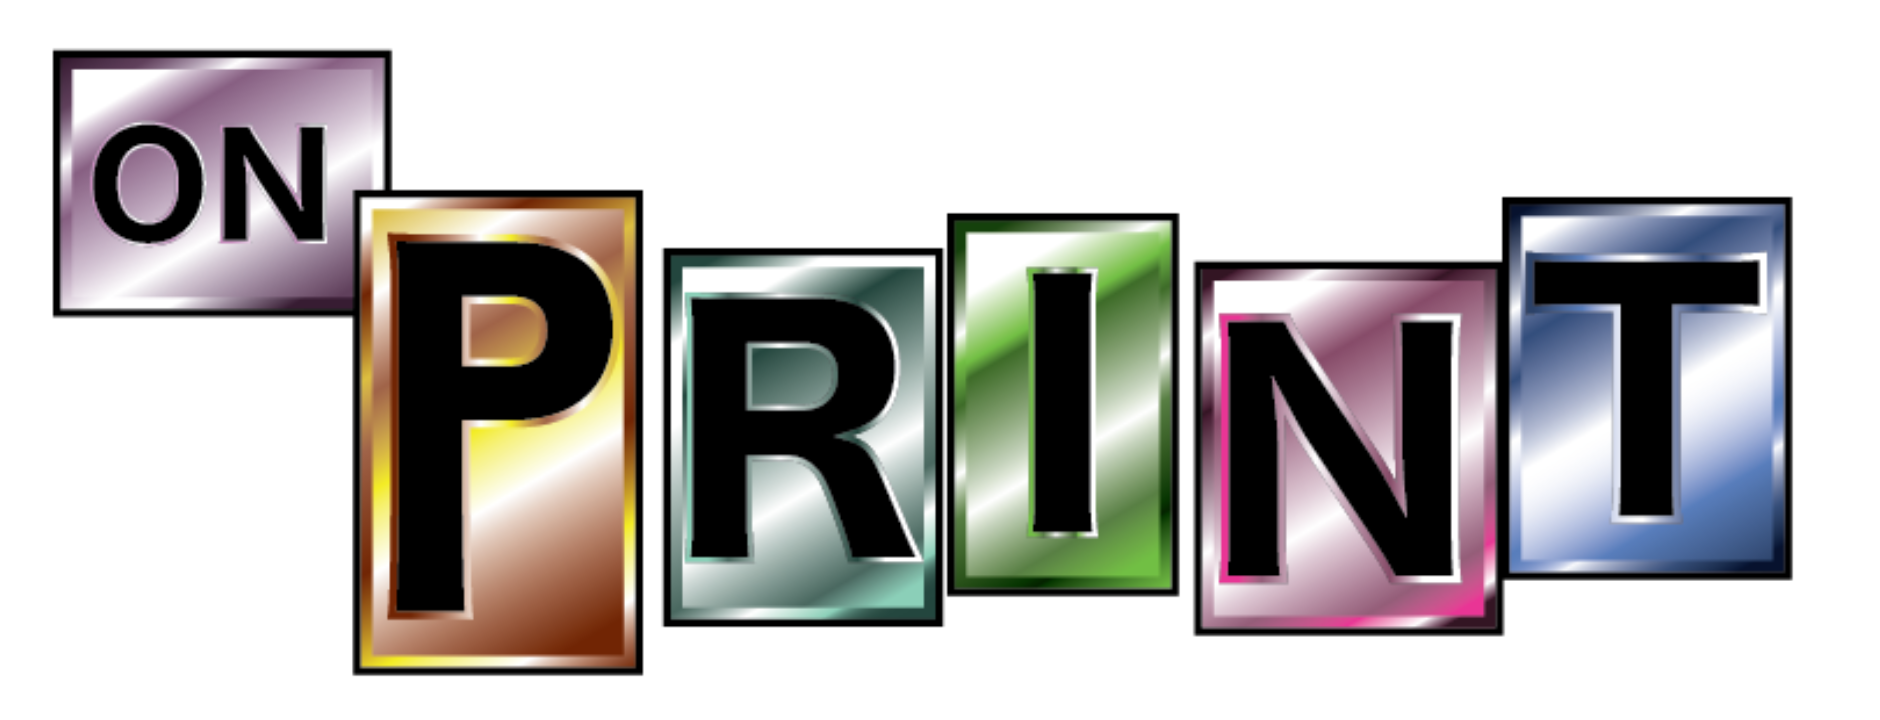 Online TShirt printing and printing – On Print TShirt